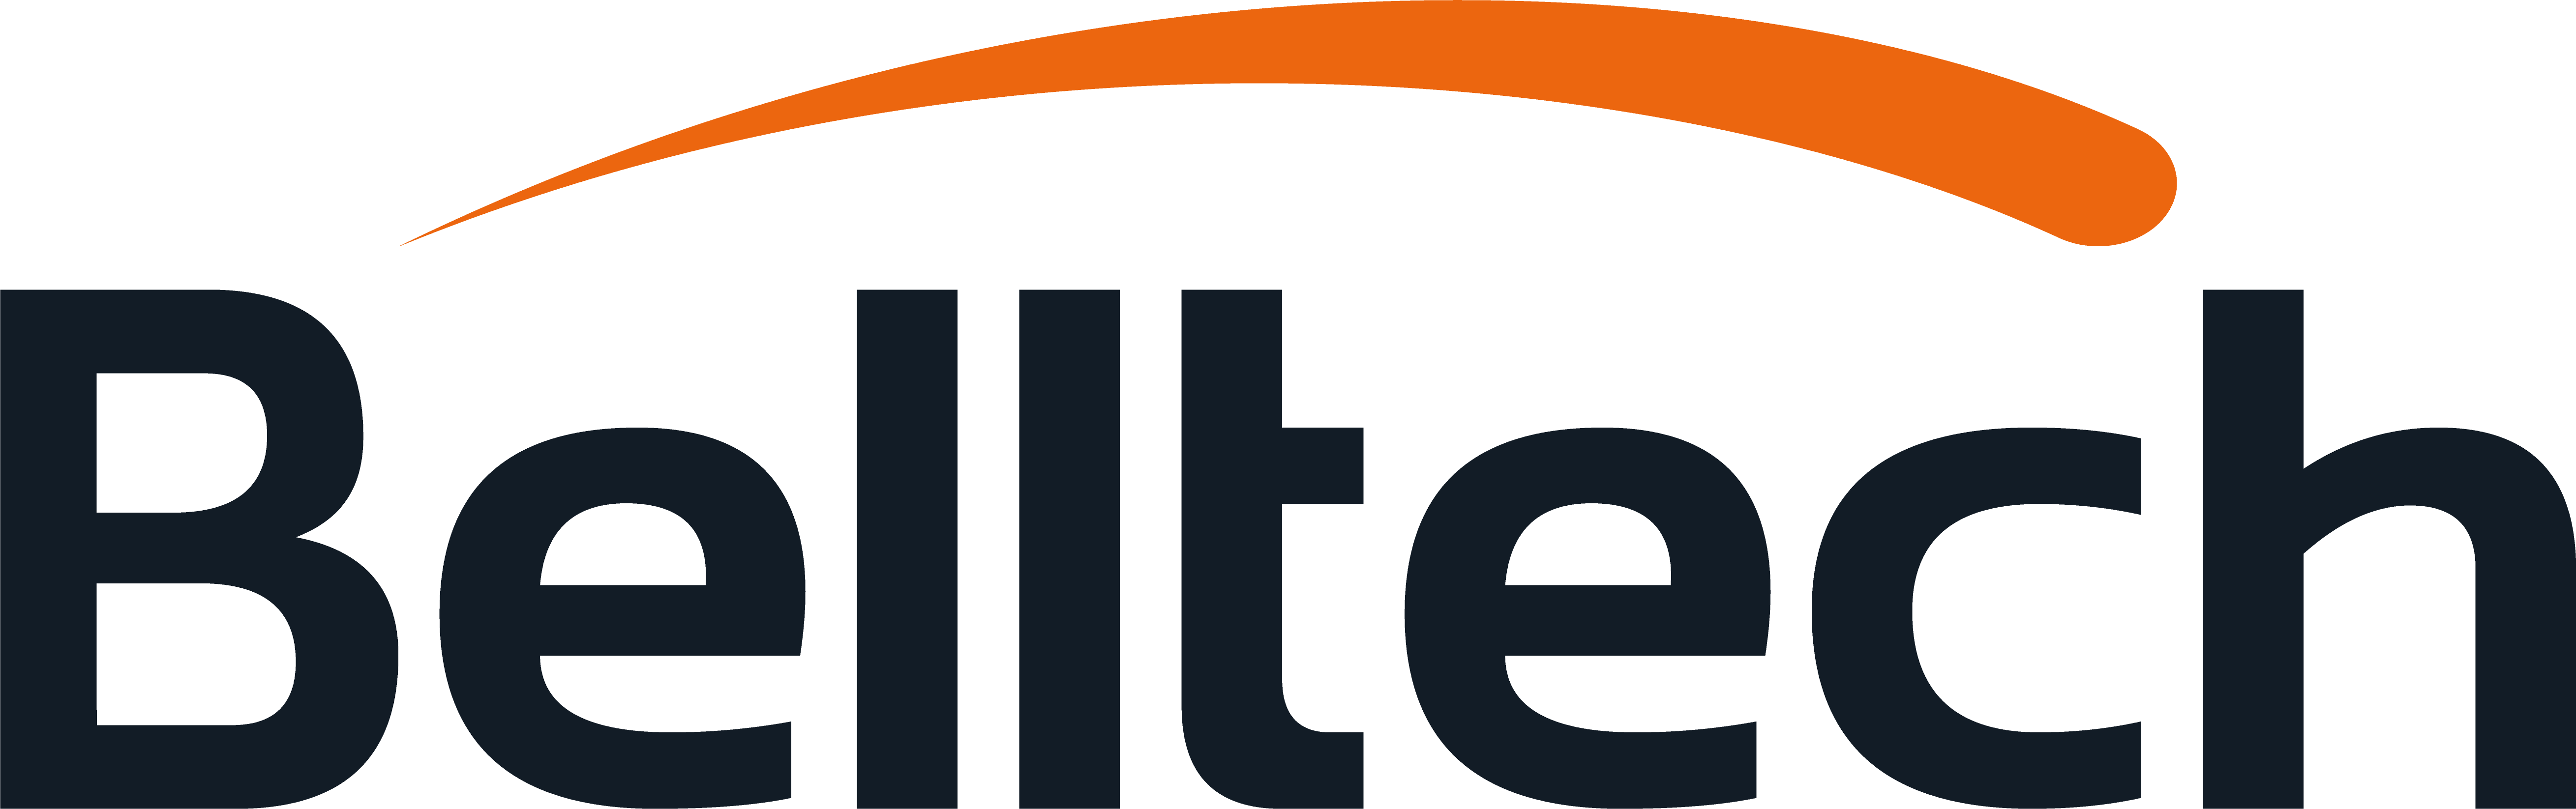 belltech logo